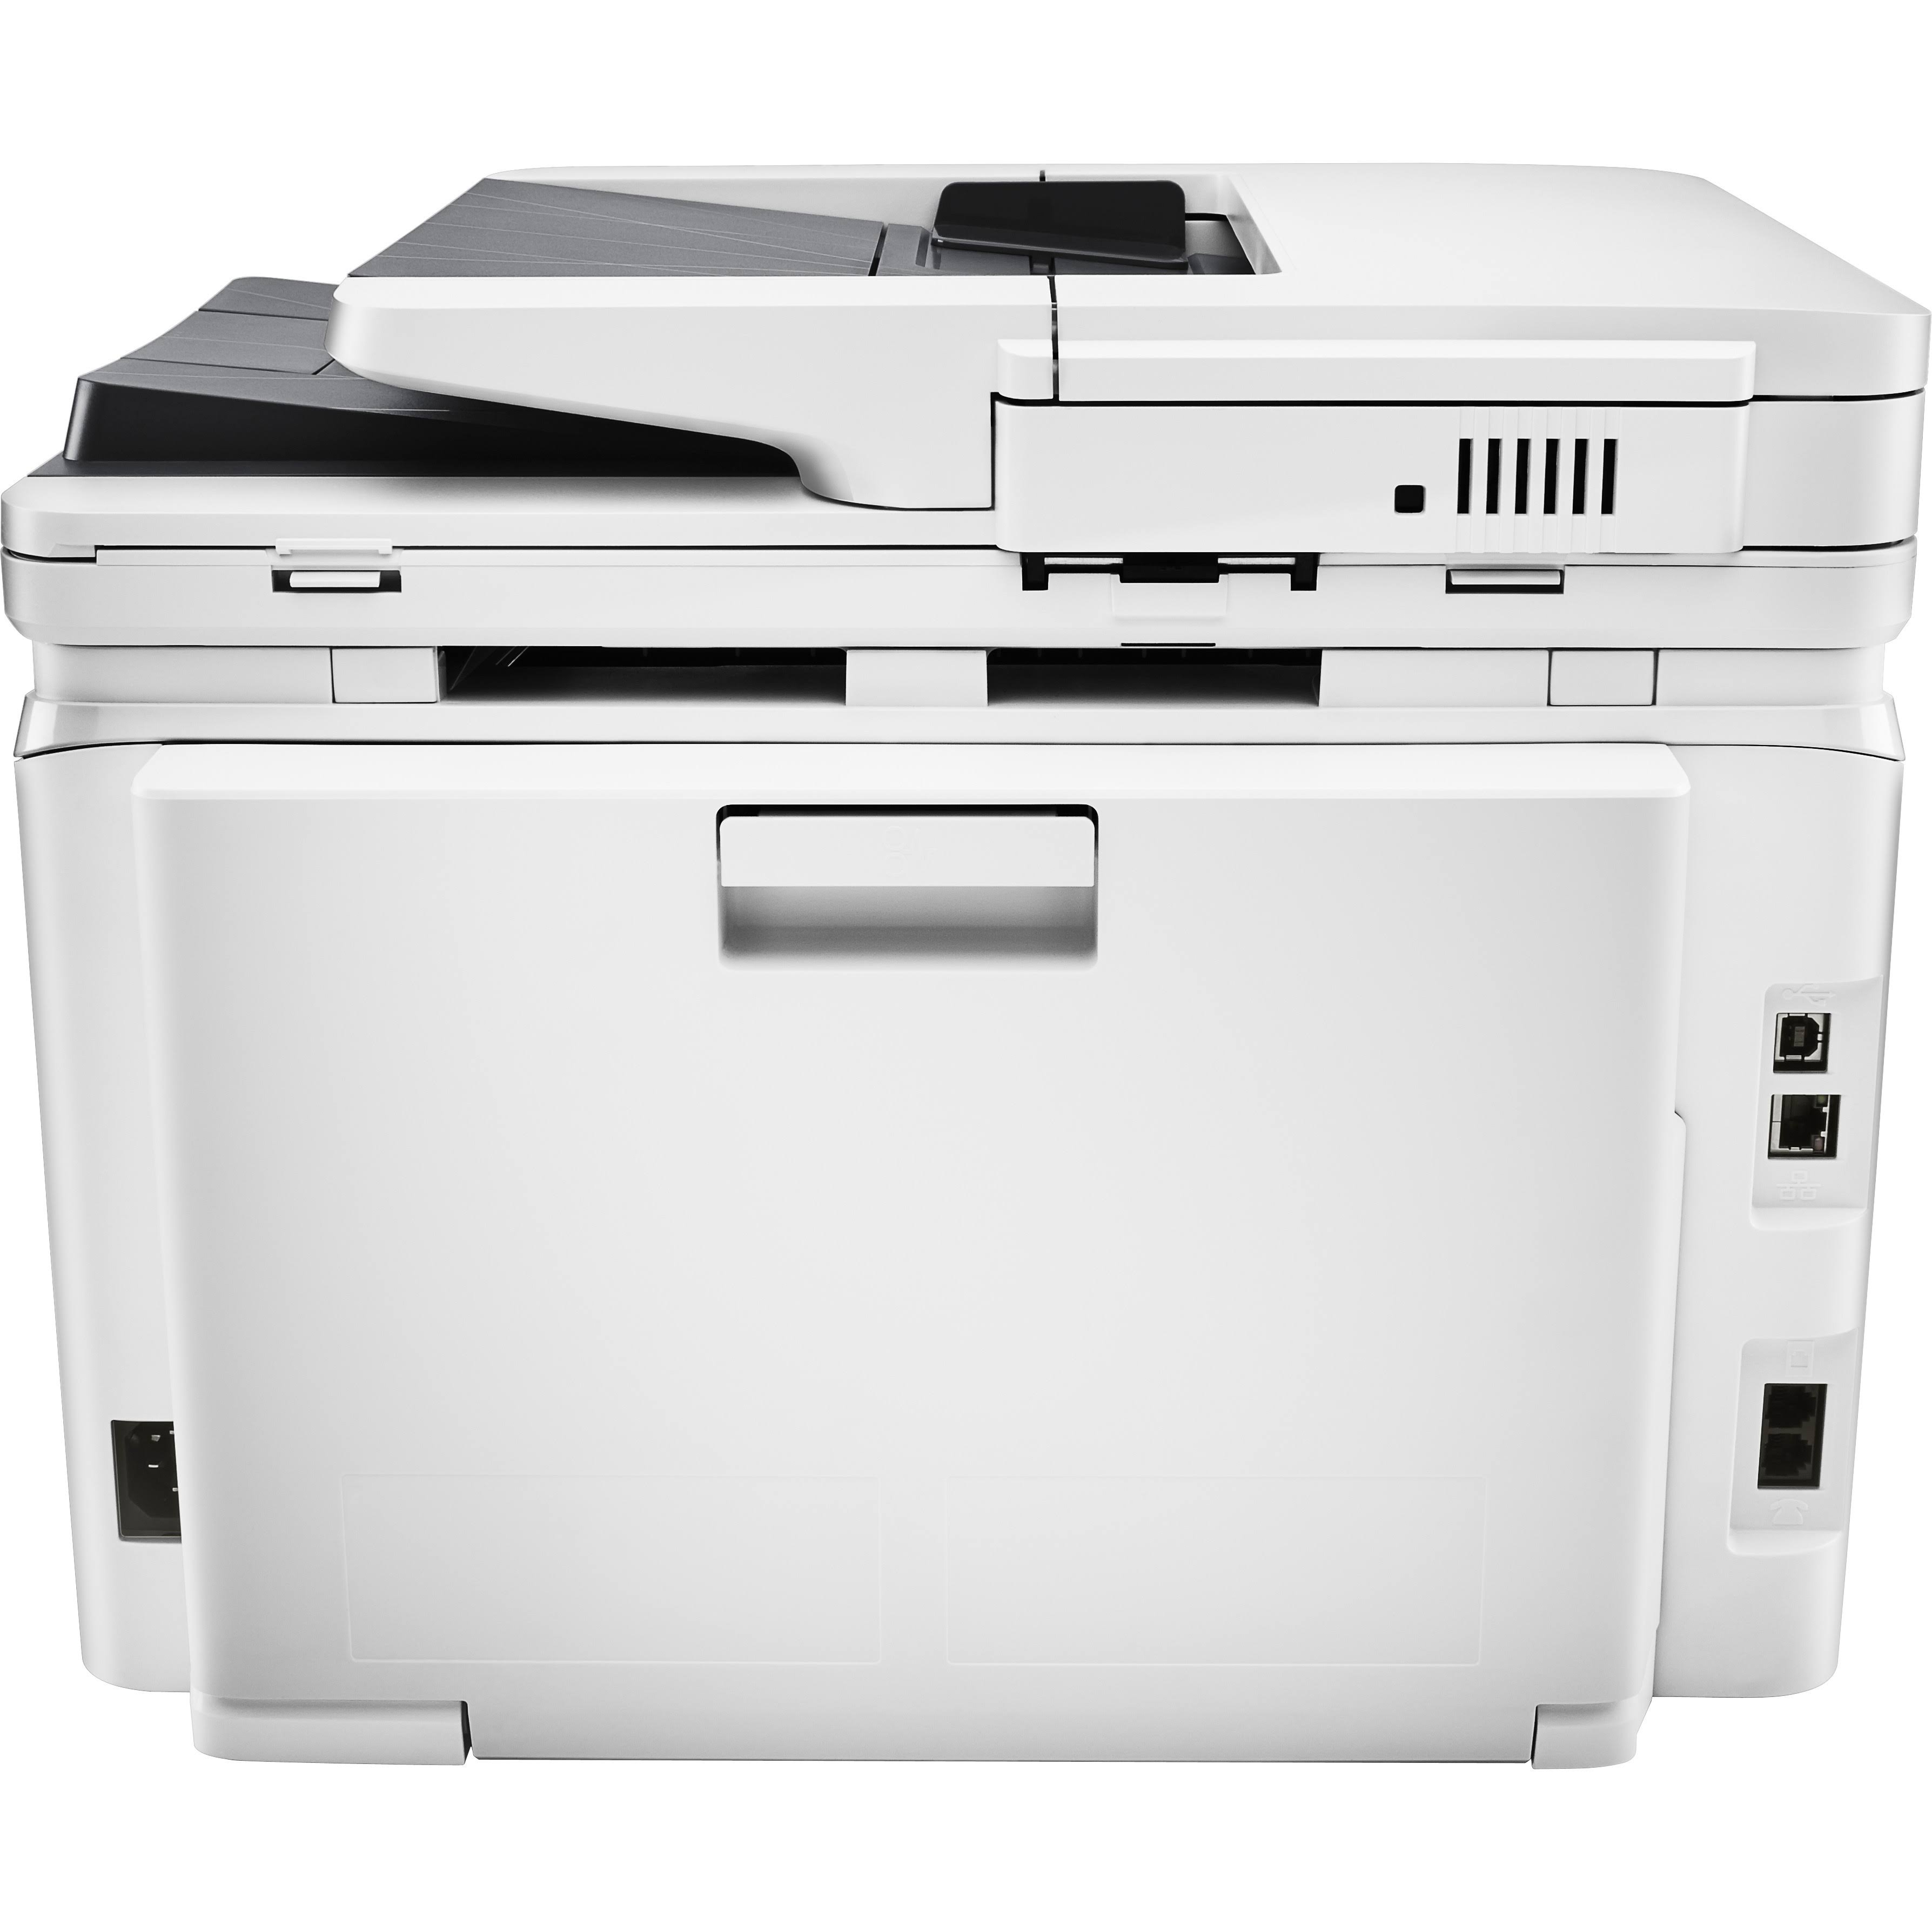 HP Impresora en color inalámbrica multifunción  LaserJet Pro M277dw (reacondicionada certificada)